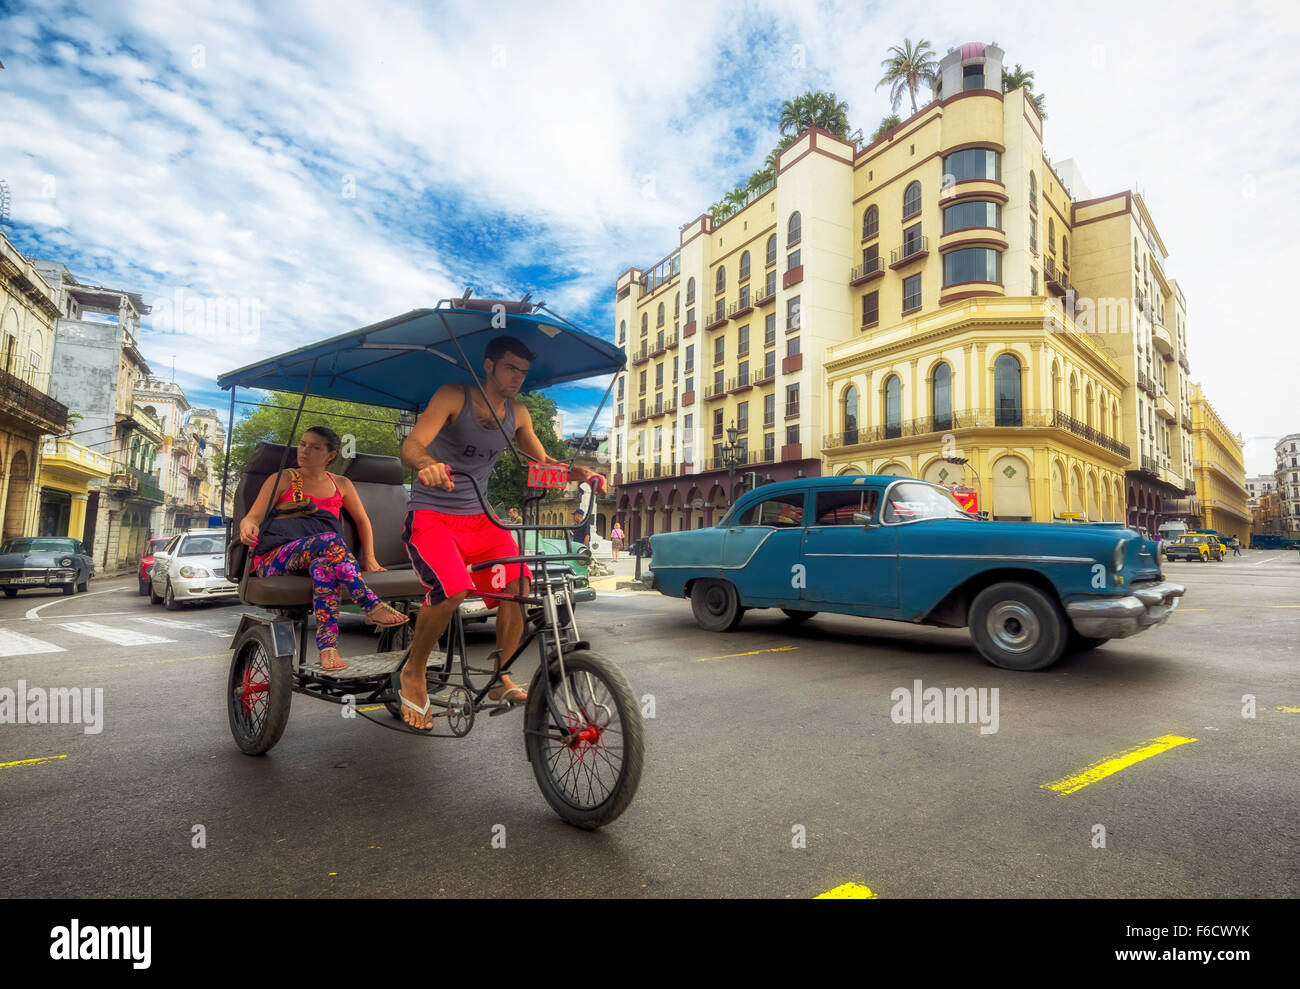 Oldtimer nelle vie, pedicab, persone taxi sulla strada incrocio vicino al Hotel Telegrafo, La Habana, Havana Foto Stock